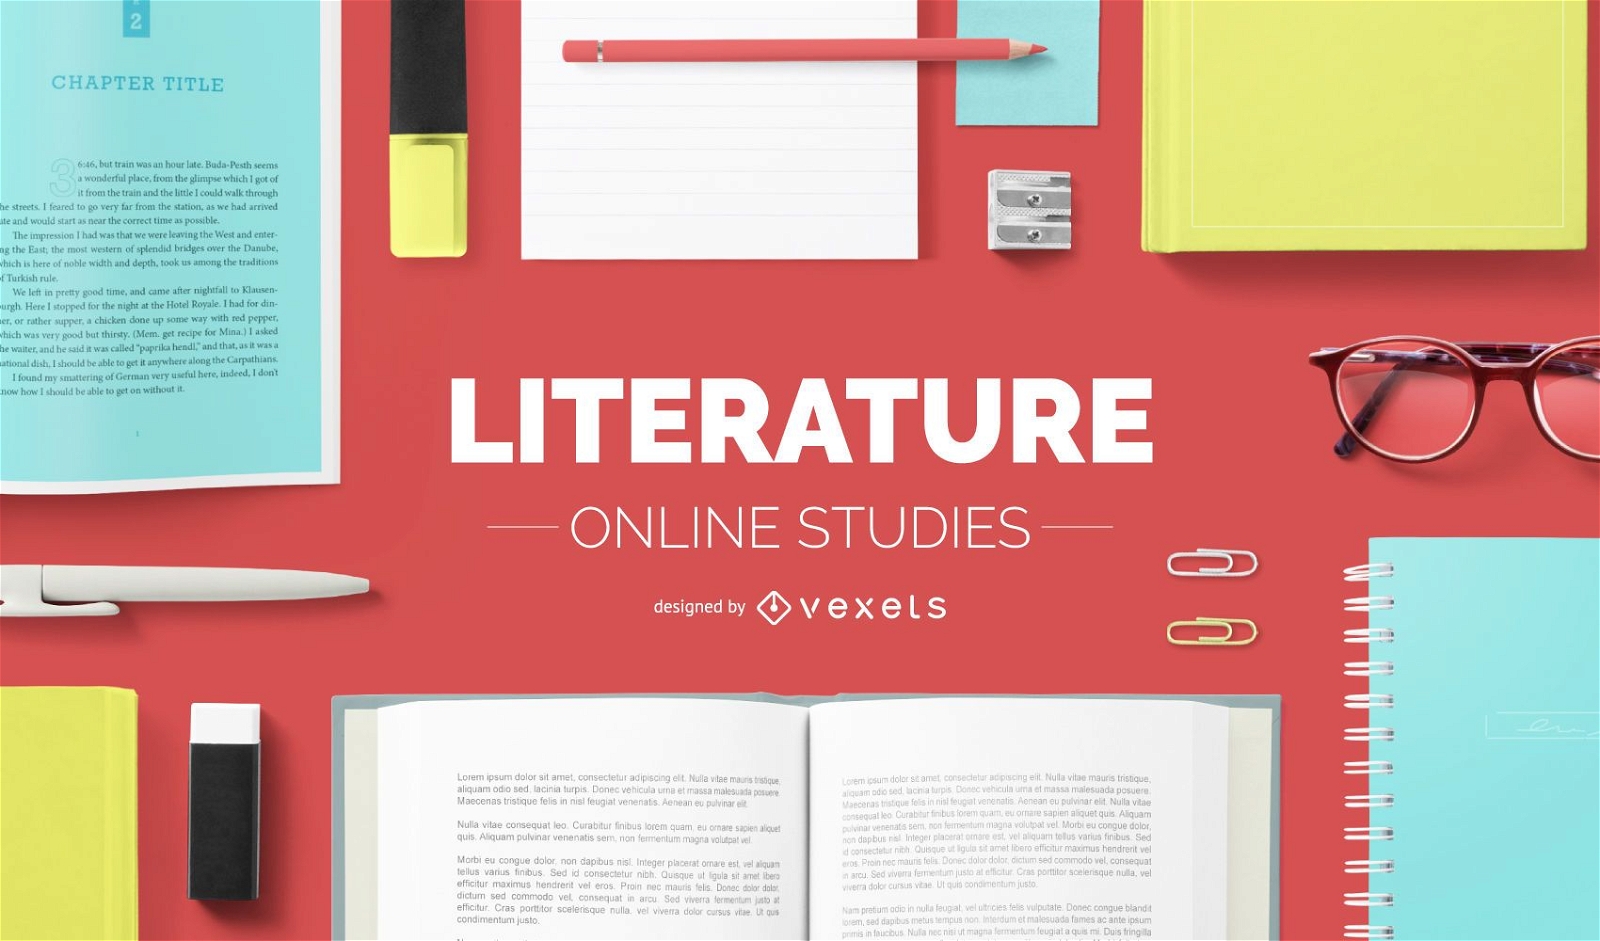 Online-Literaturstudien decken das Design ab